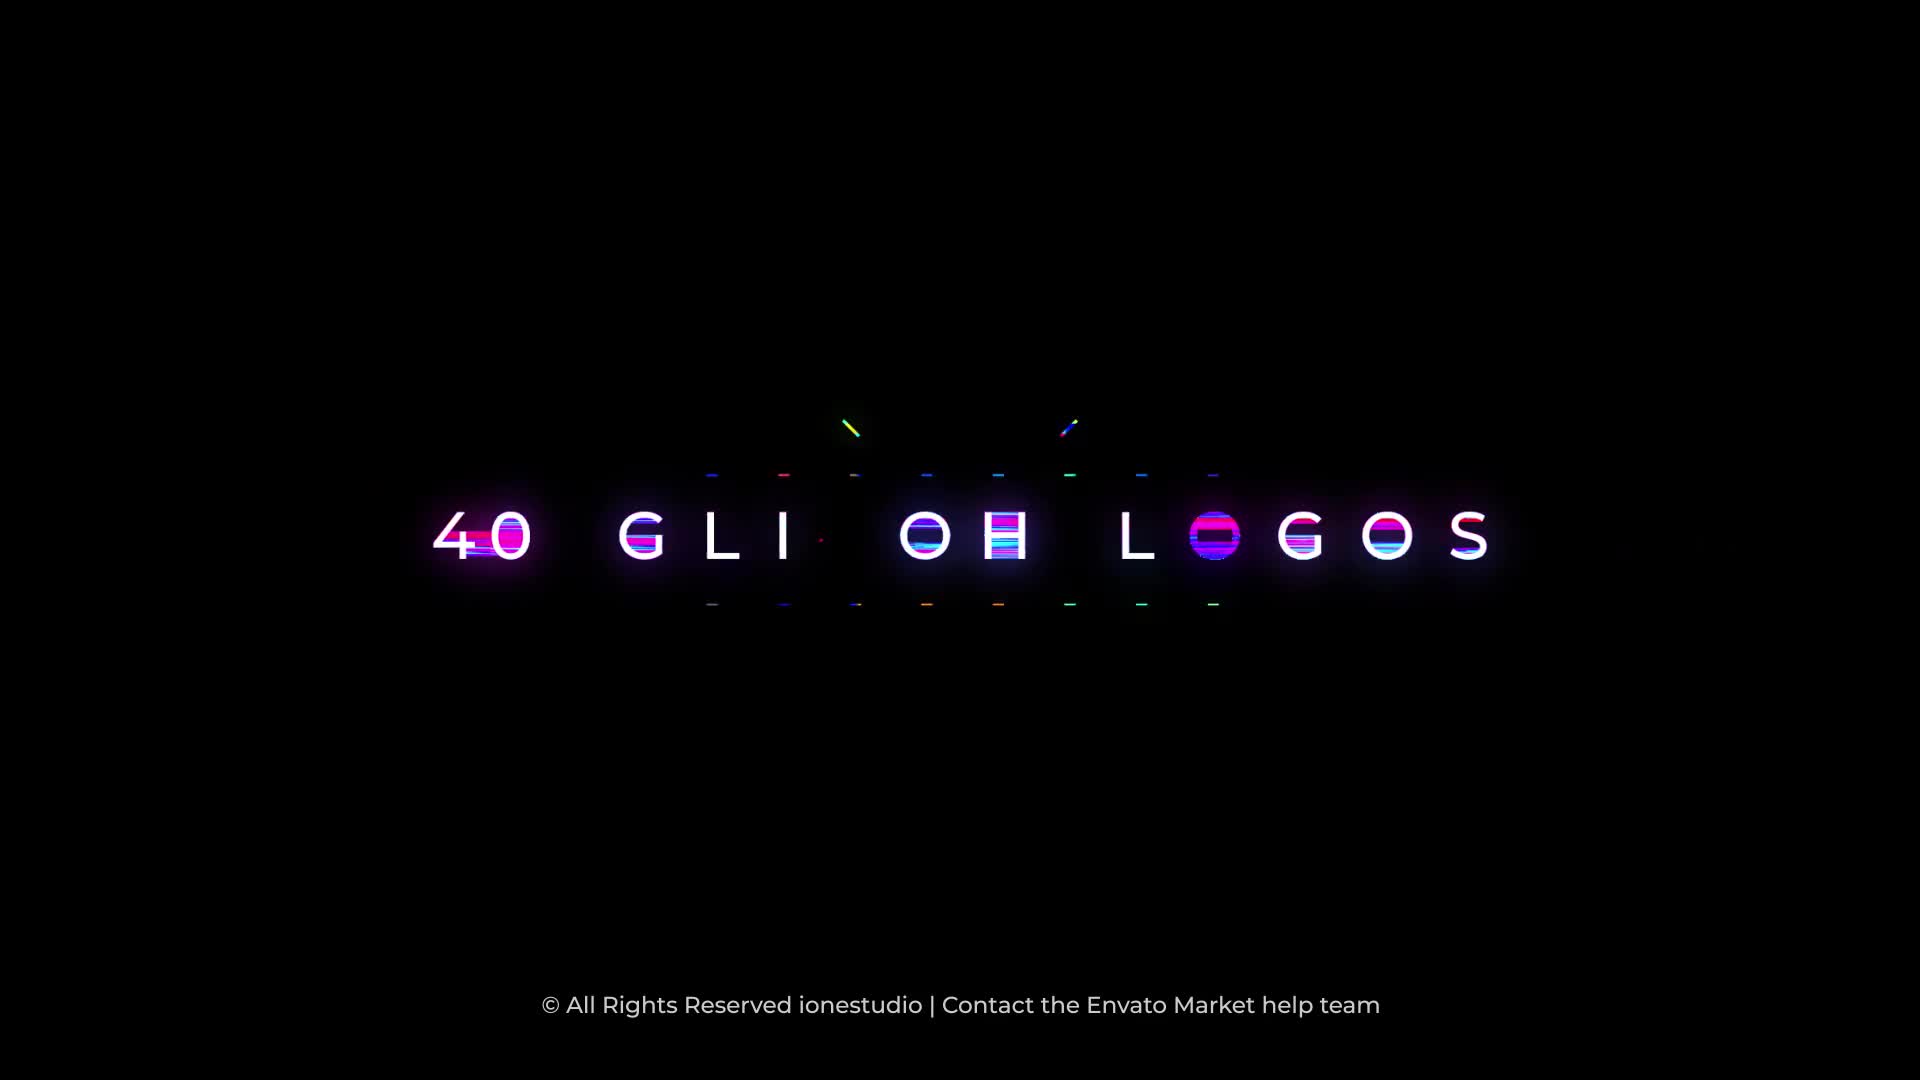 Glitch Logos For Premiere Pro | 10 in 1 Videohive 36181580 Premiere Pro Image 1